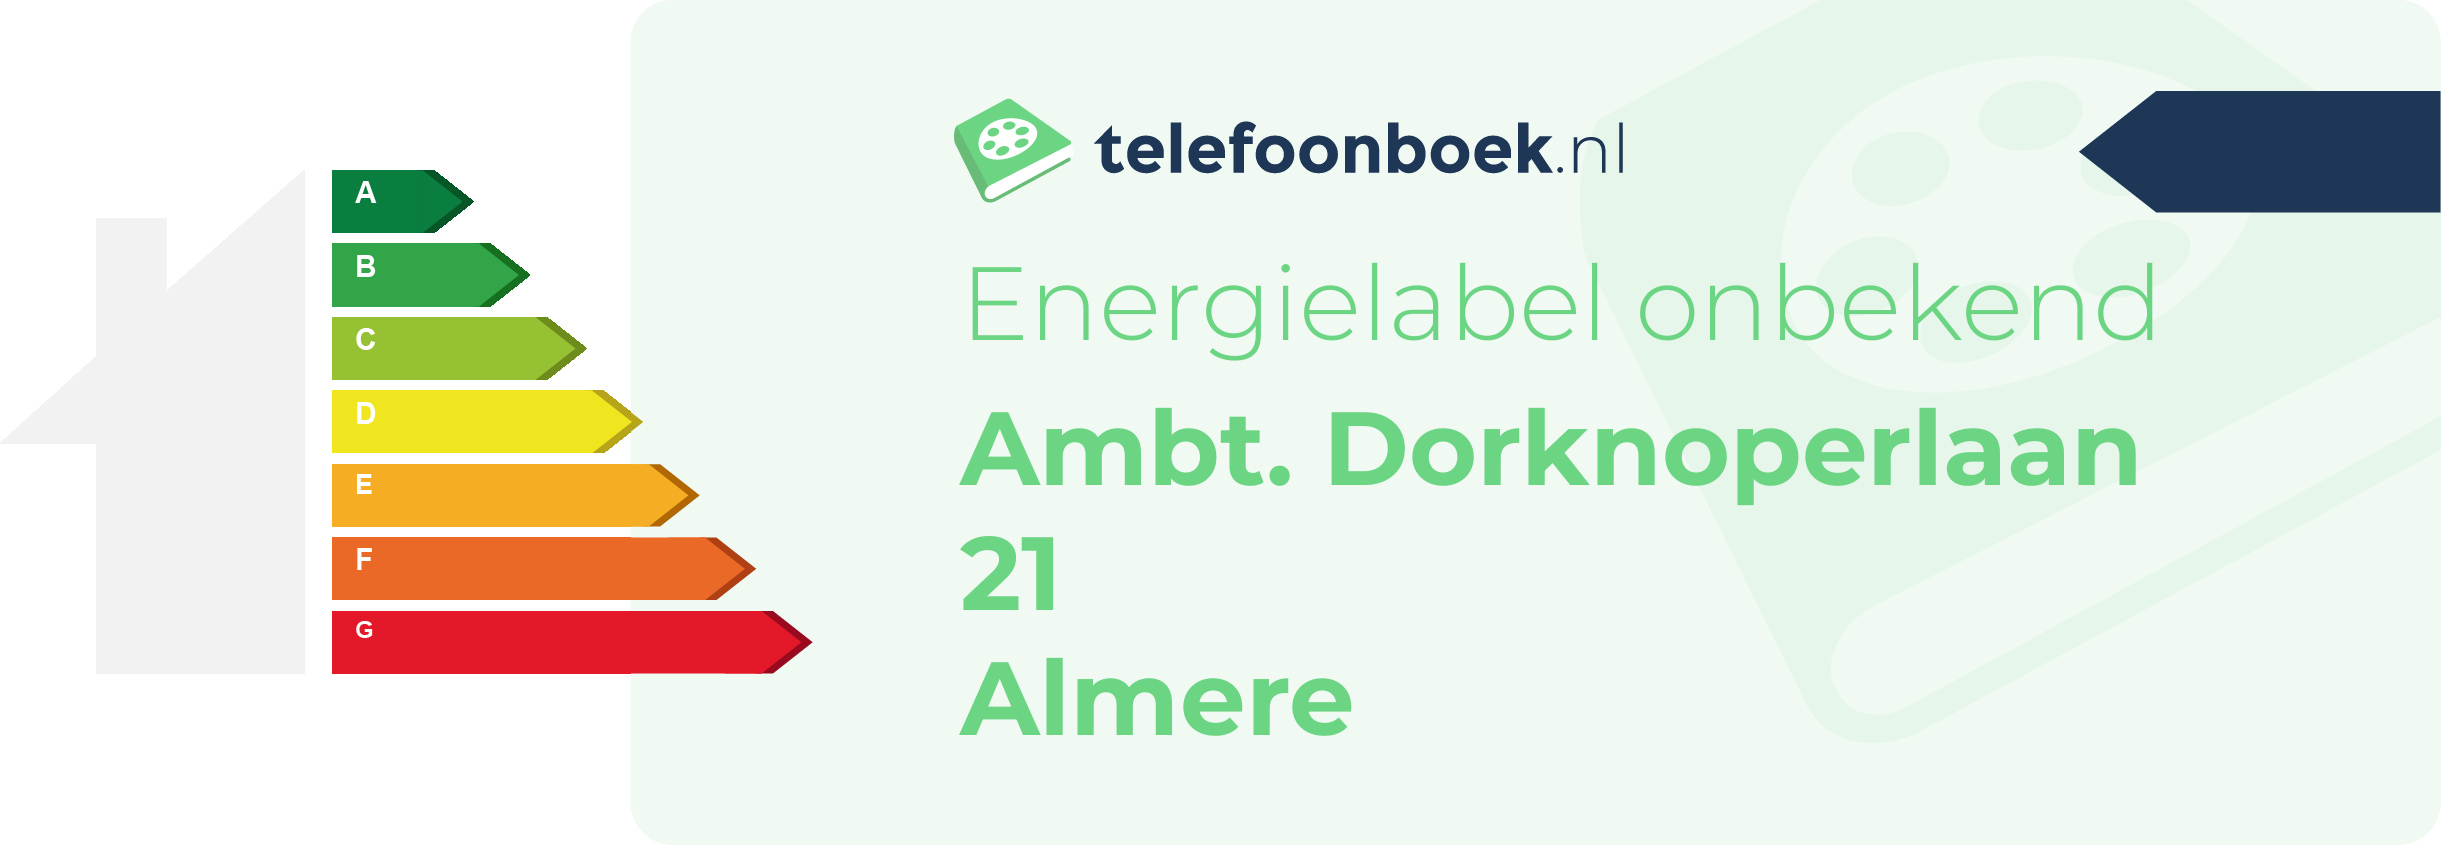 Energielabel Ambt. Dorknoperlaan 21 Almere